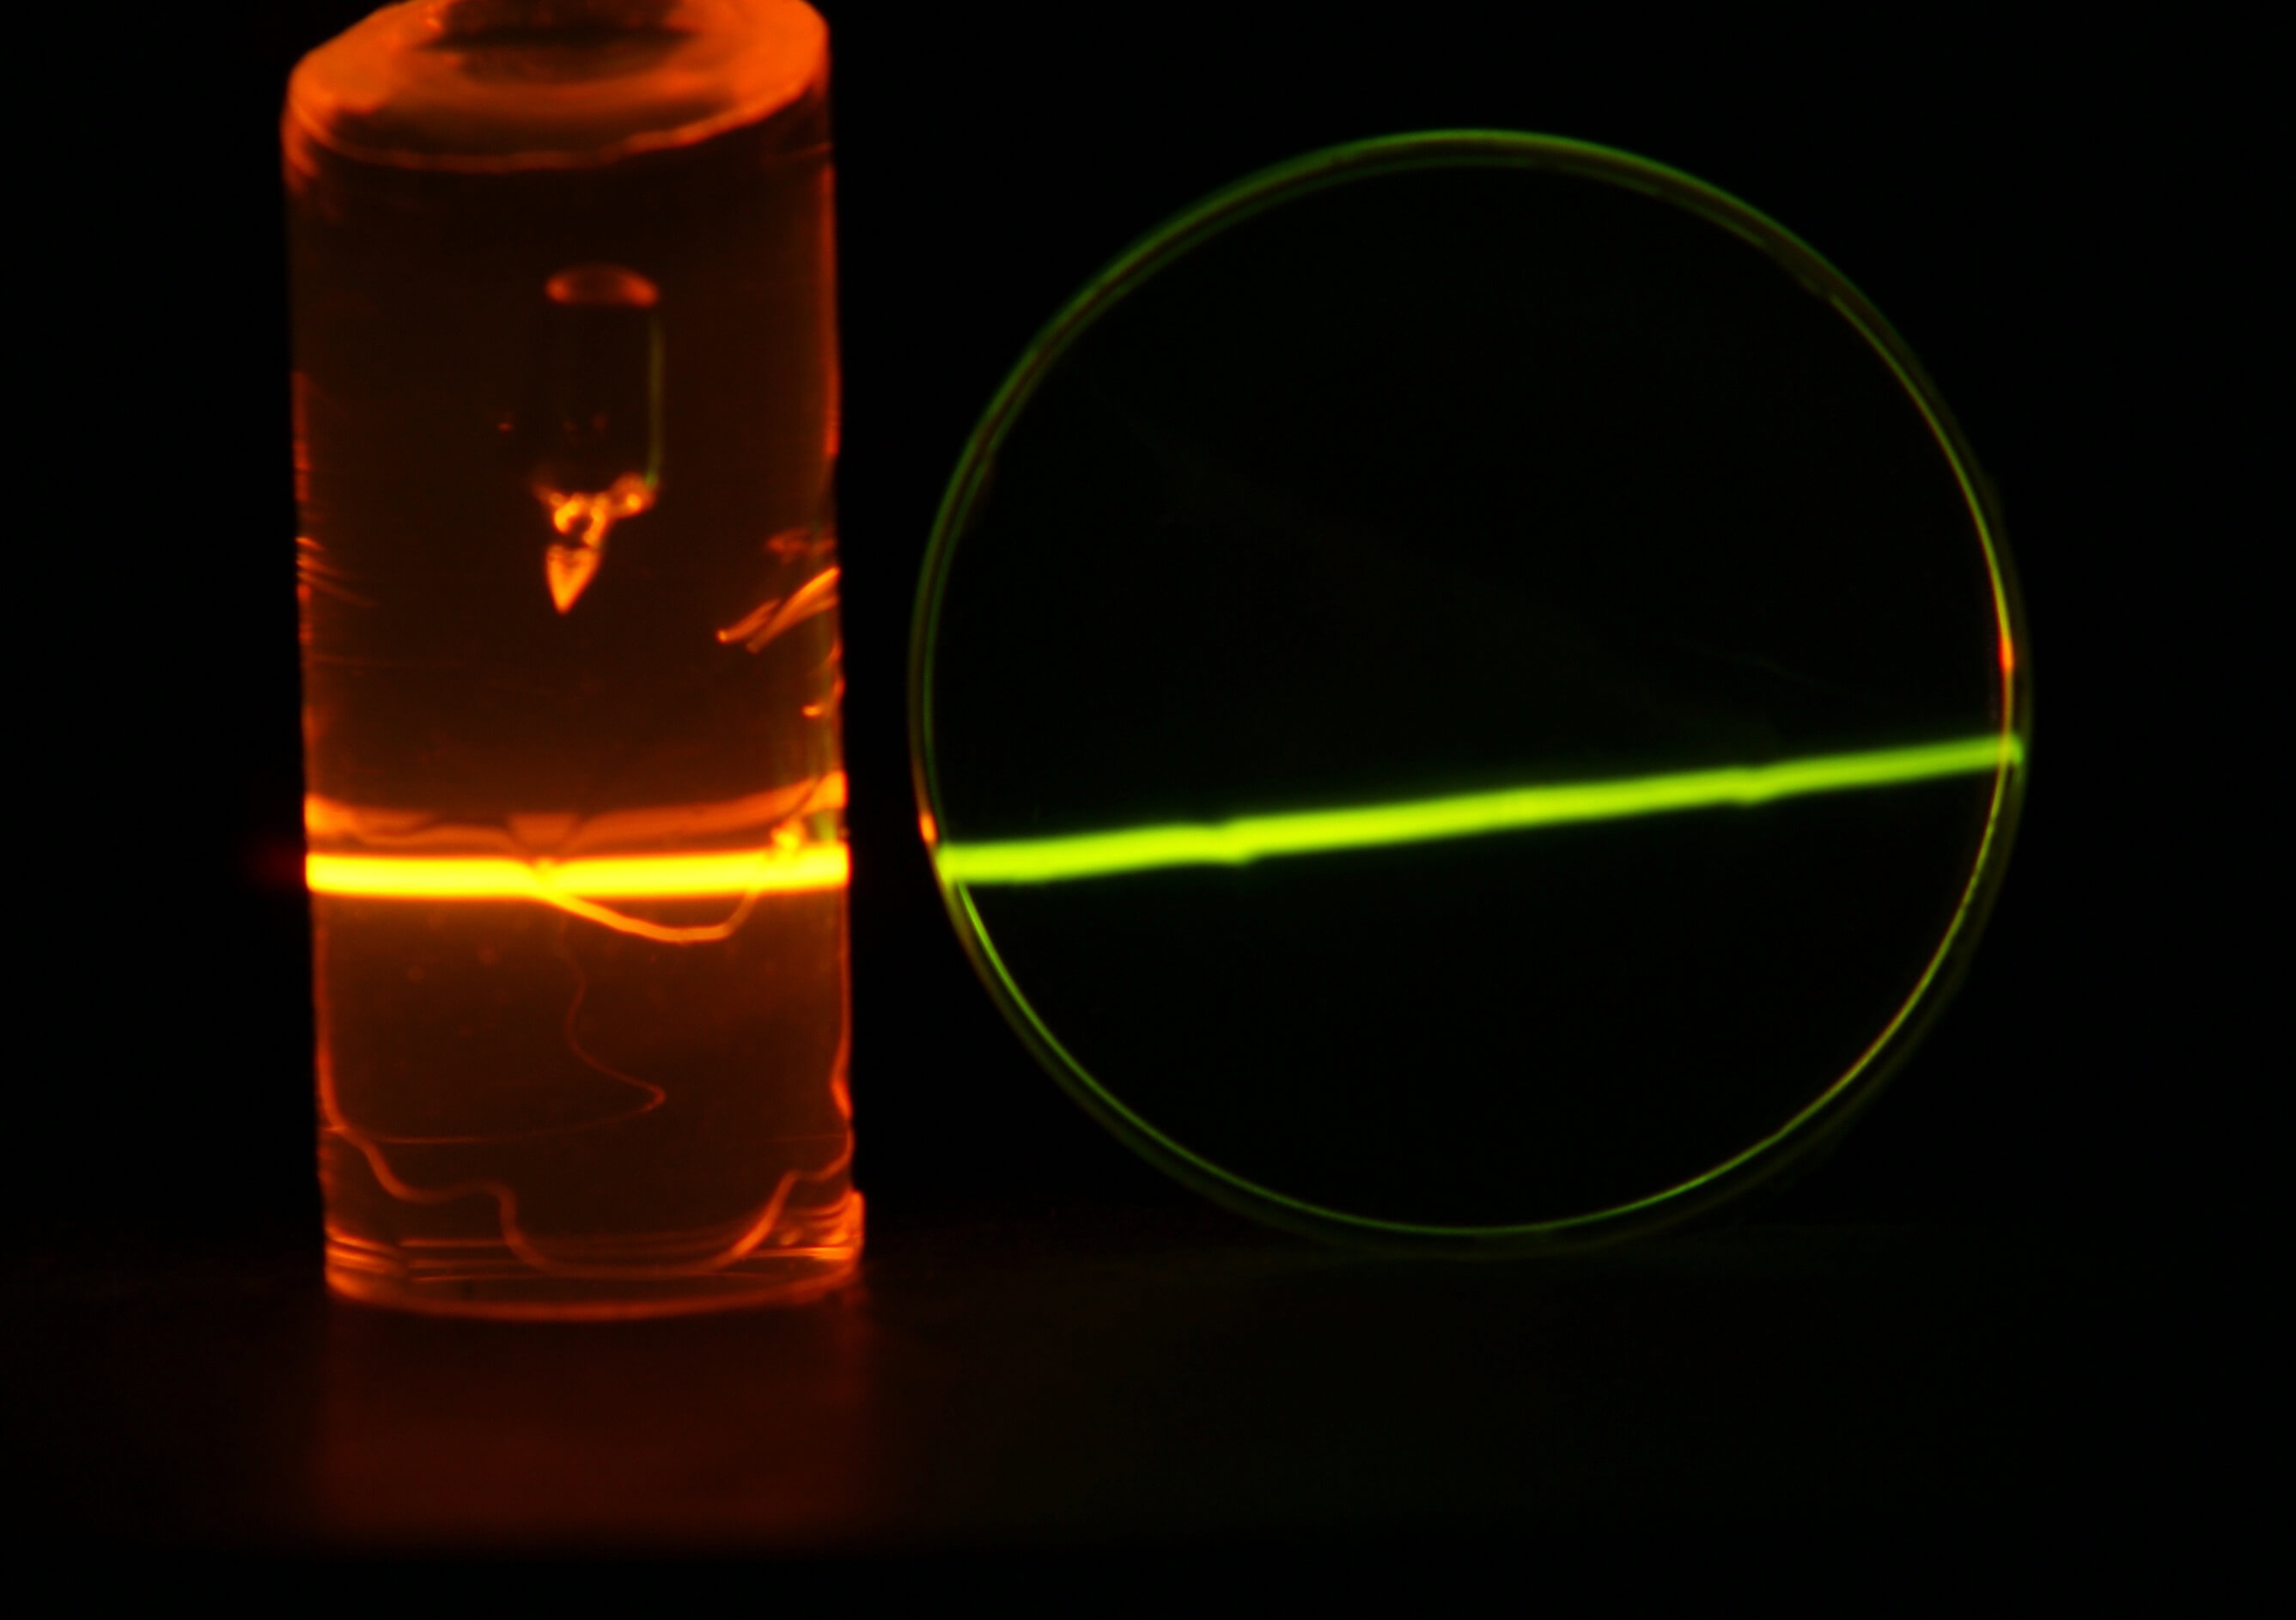 Ein infraroter Laserstrahl trifft von links auf Hochkonverter-Proben aus PMMA. Die mit dem Auge sichtbare Spur des Lasers zeigt die Absorption und Hochkonversion einzelner Lichtteilchen.